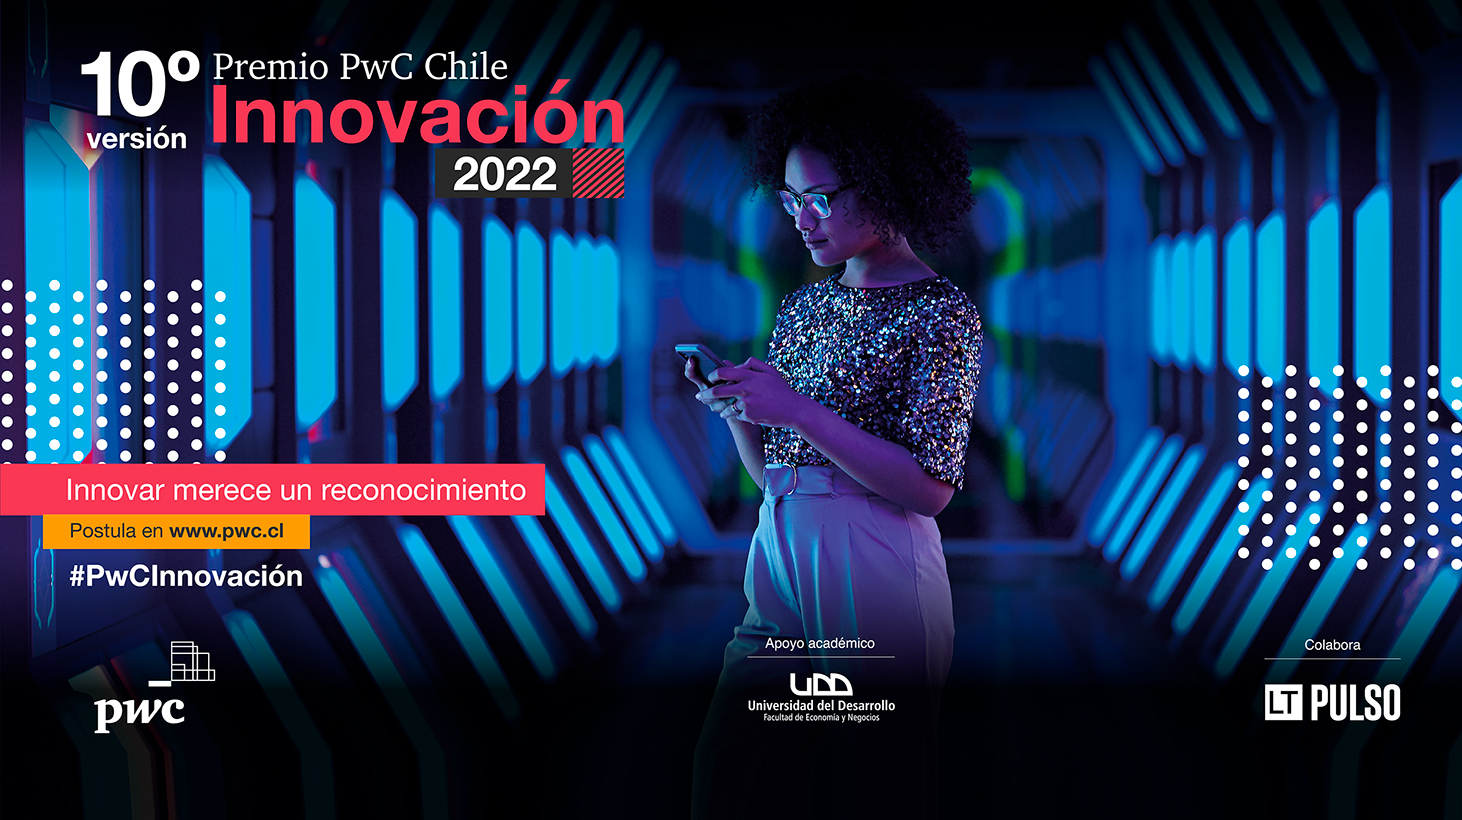 UDD Ventures invita a empresas a postular a la 10° versión del premio “PwC Chile Innovación”